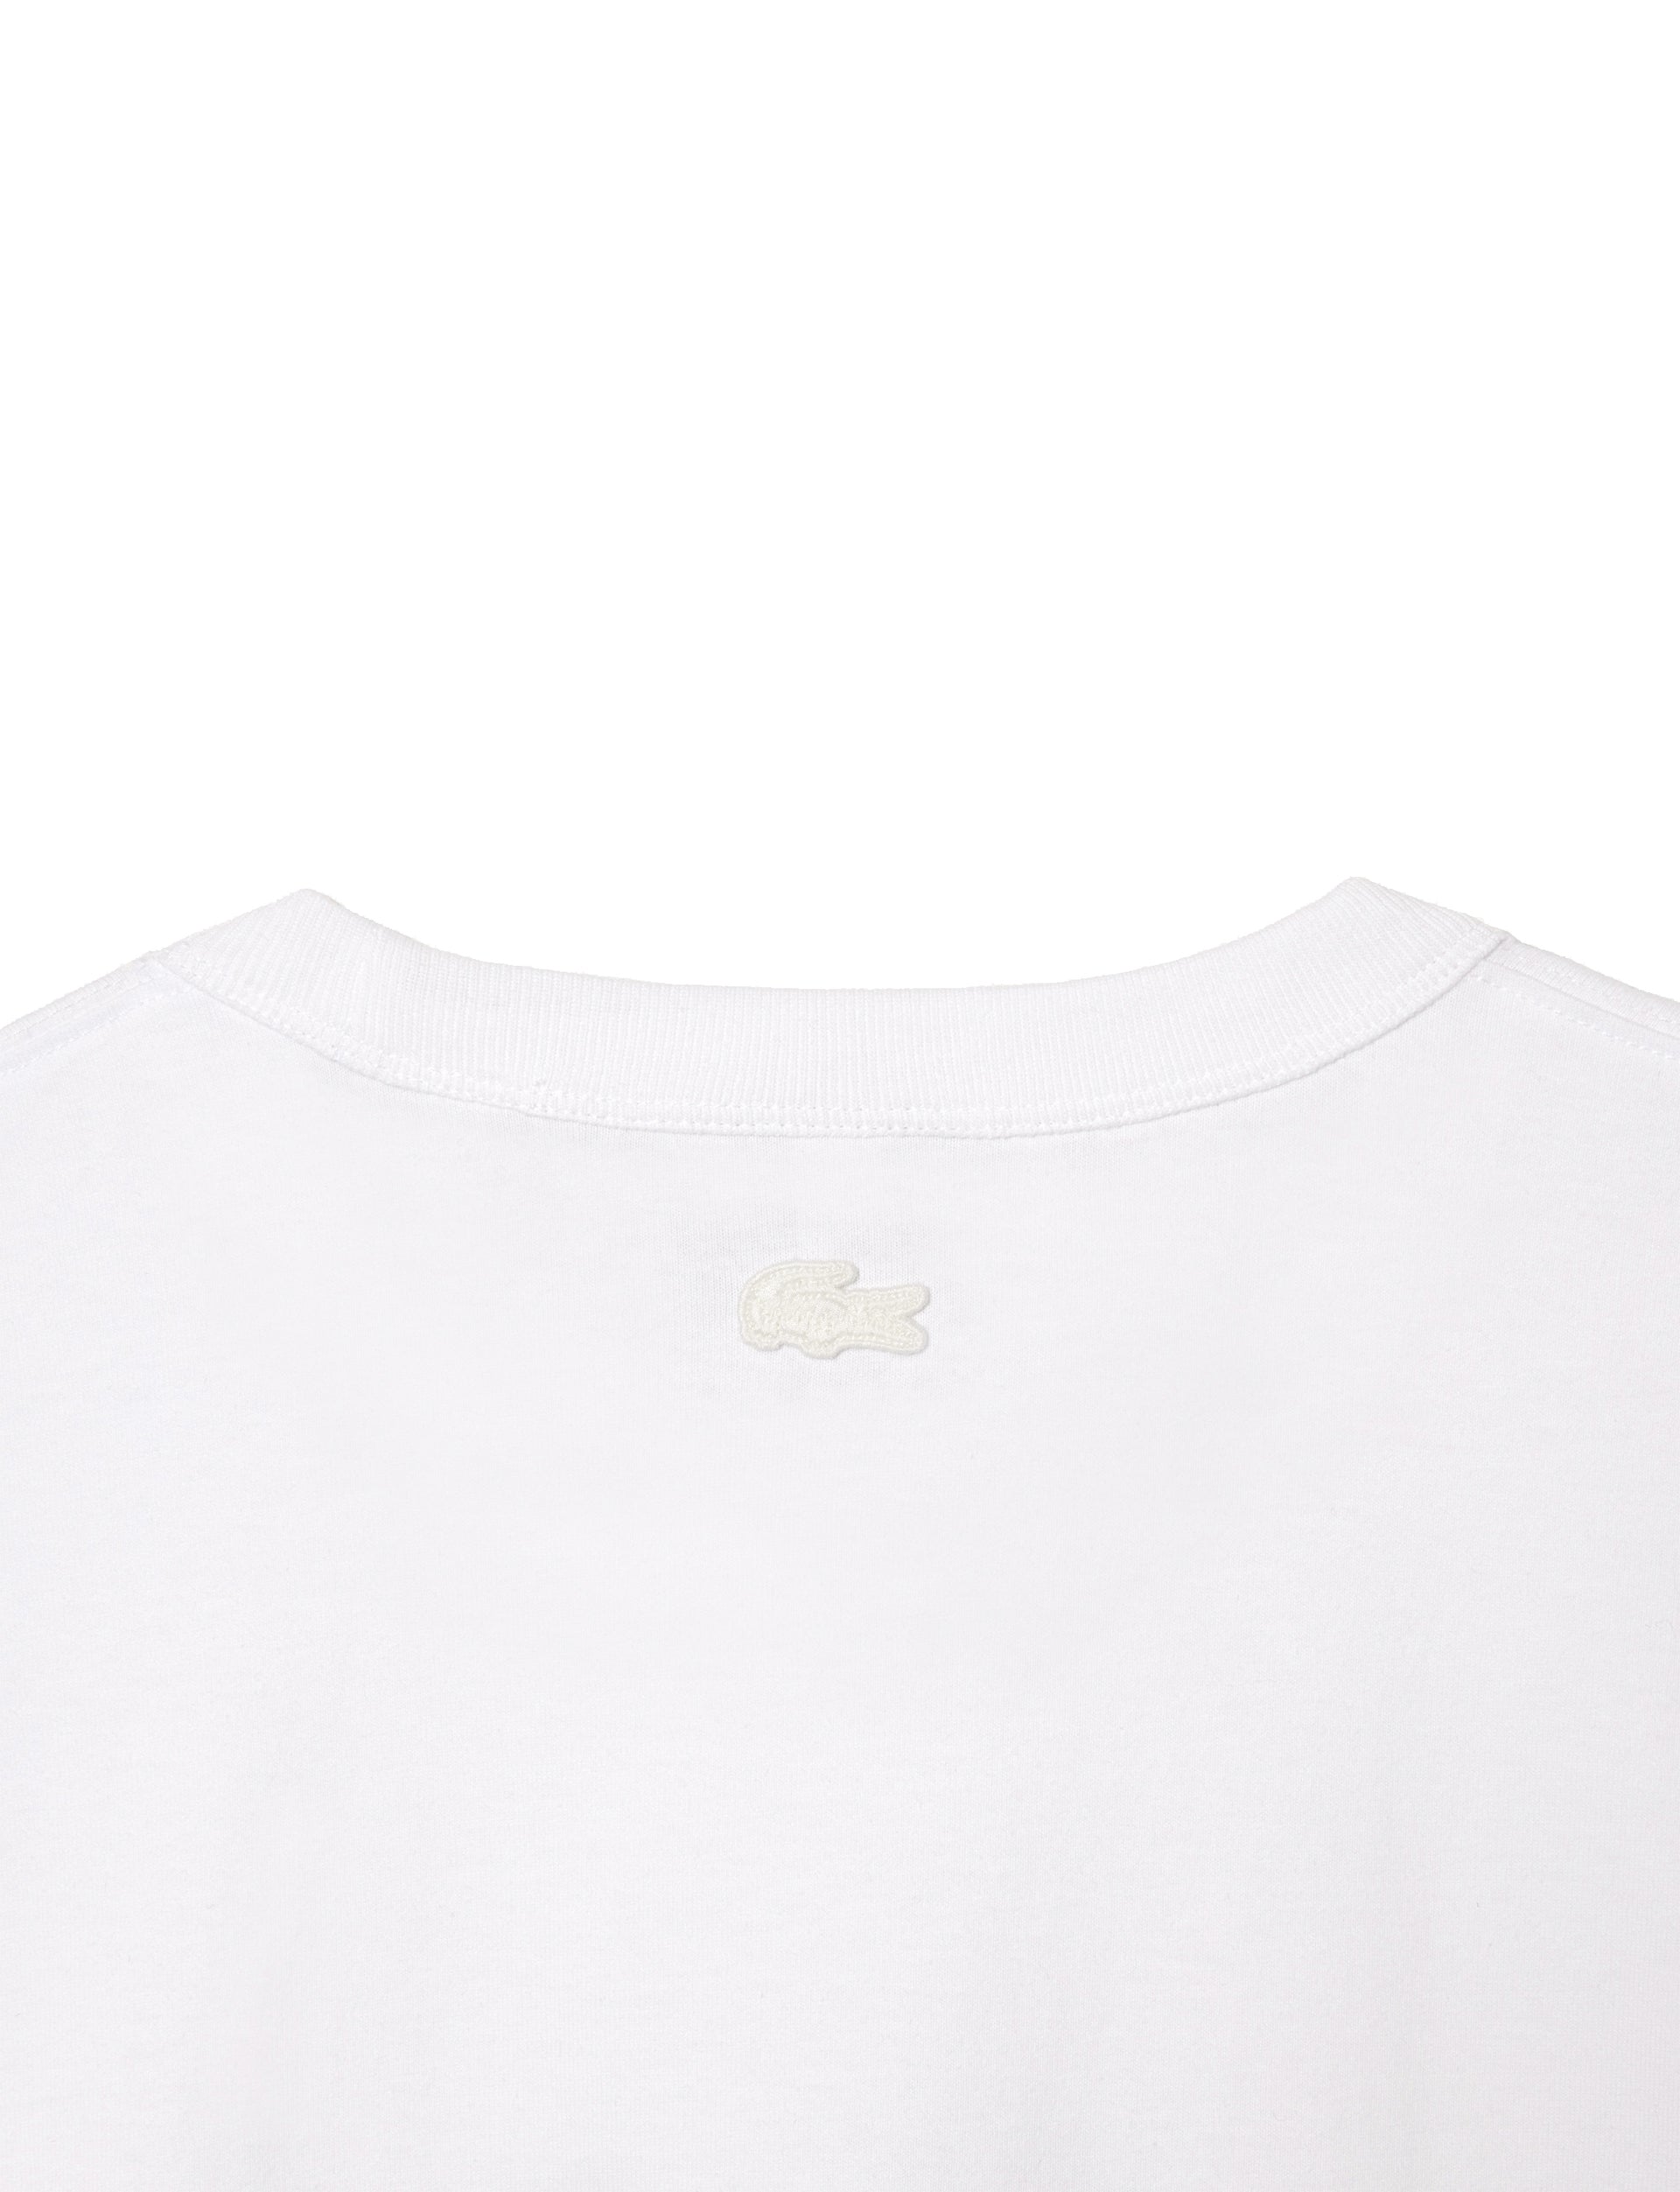 Lacoste x le FLEUR* Jersey T-shirt White